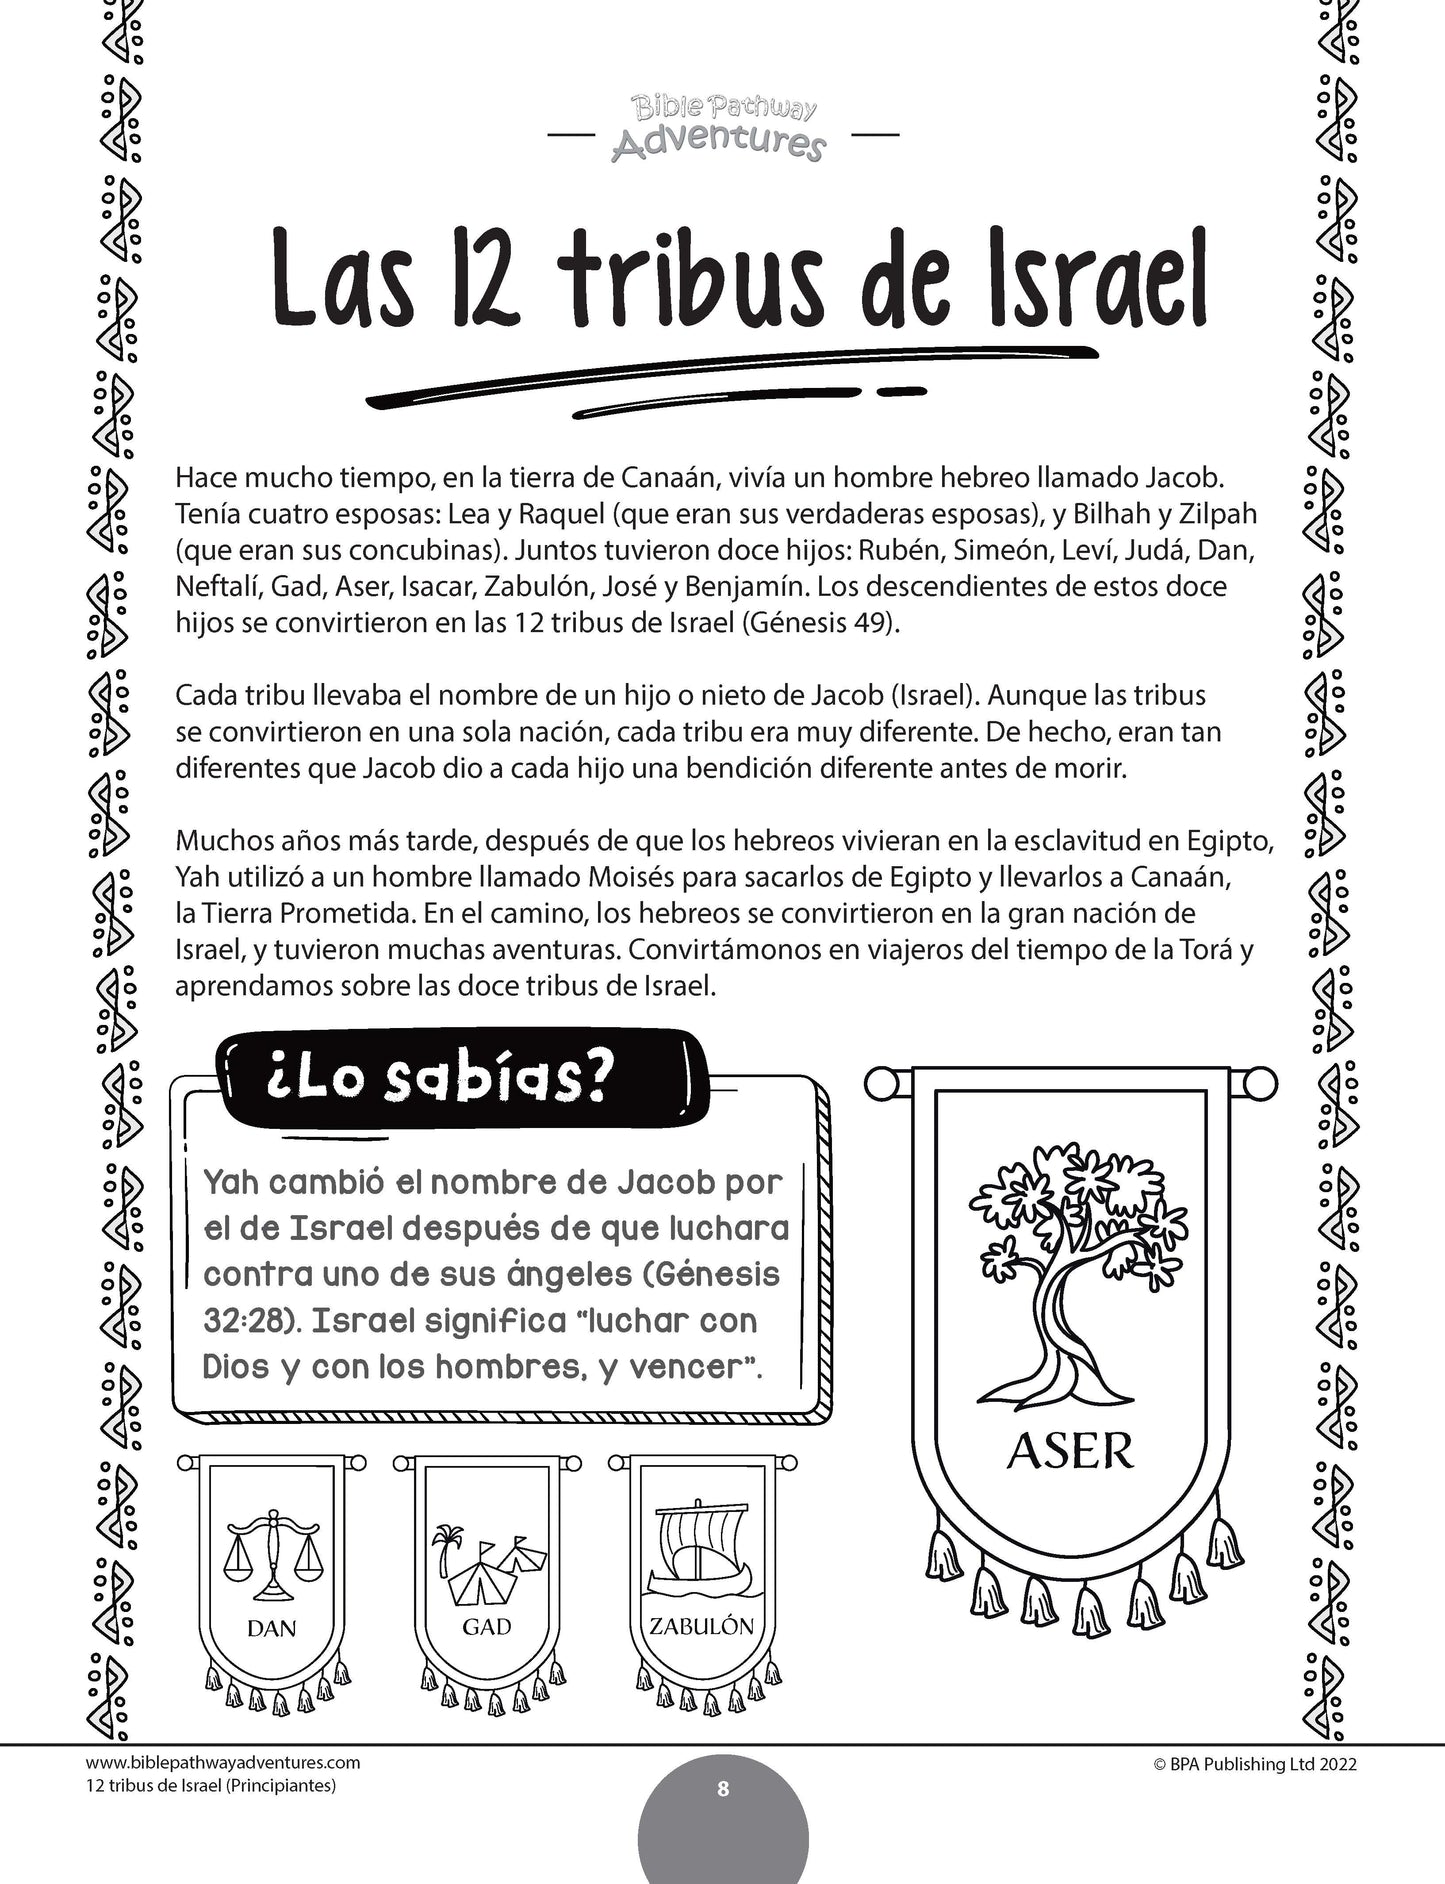 Libro de actividades de las 12 tribus de Israel para principiantes (paperback)